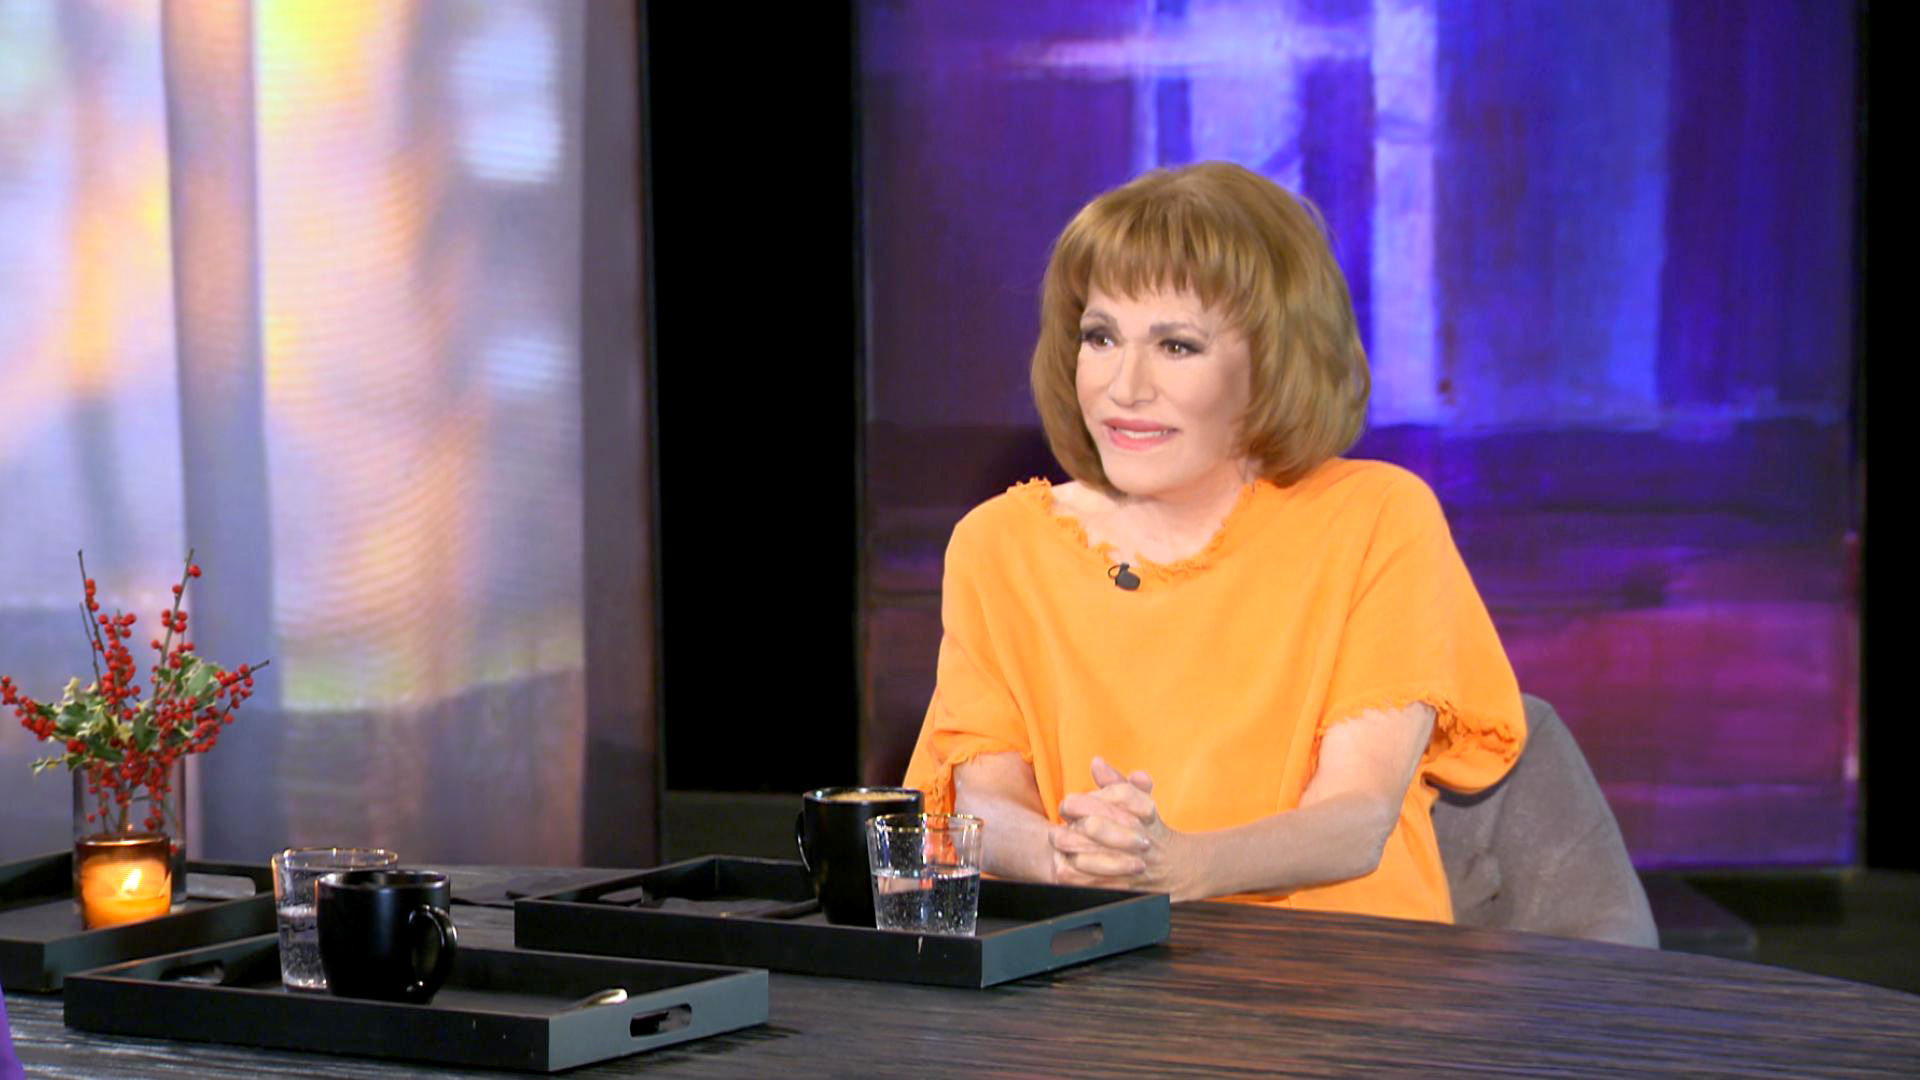 Μαίρη Χρονοπούλου: «Σιχαίνομα τα γεράματα. Δεν θέλω να φτάσω στο DNA των θηλυκών της οικογένειάς μου»